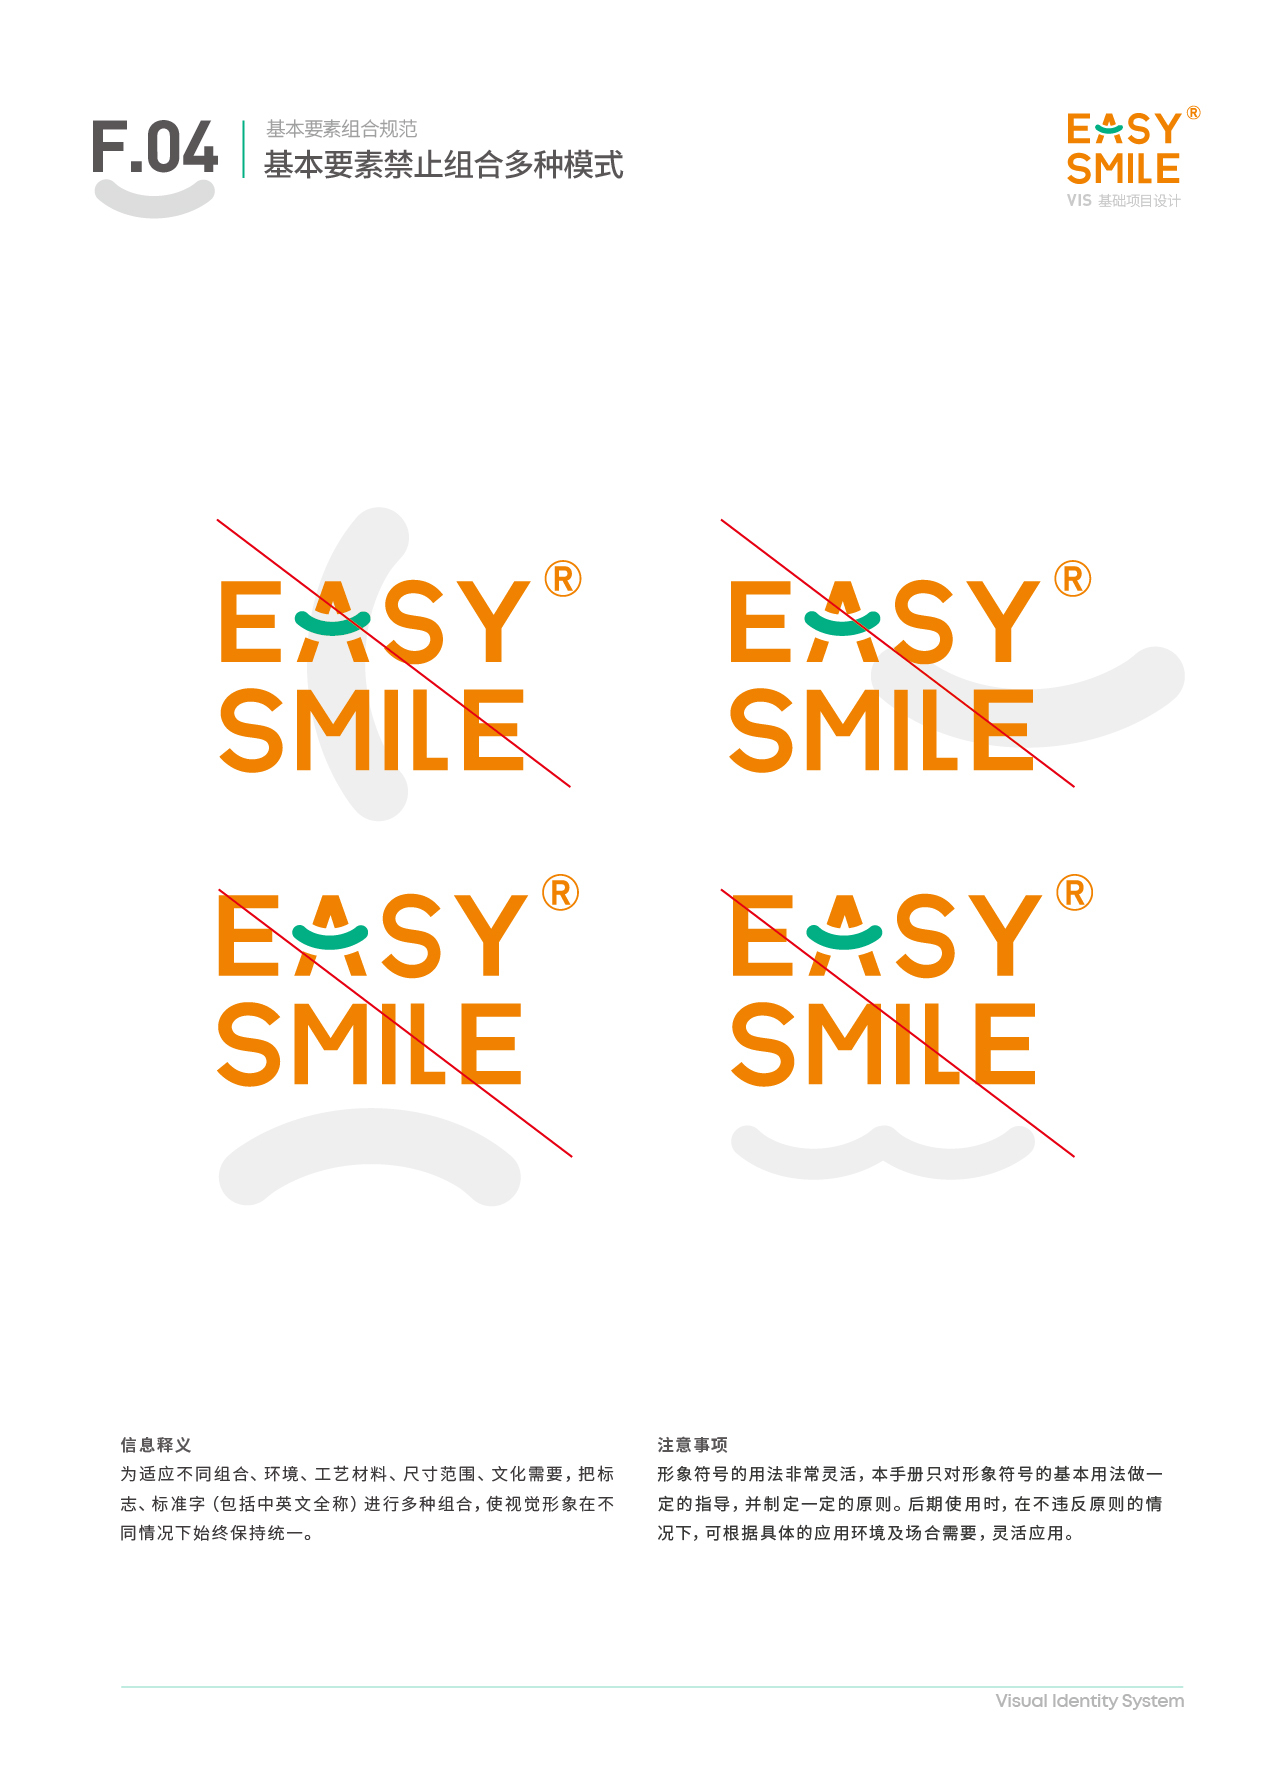 Easysmile 轻松笑品牌VIS图32